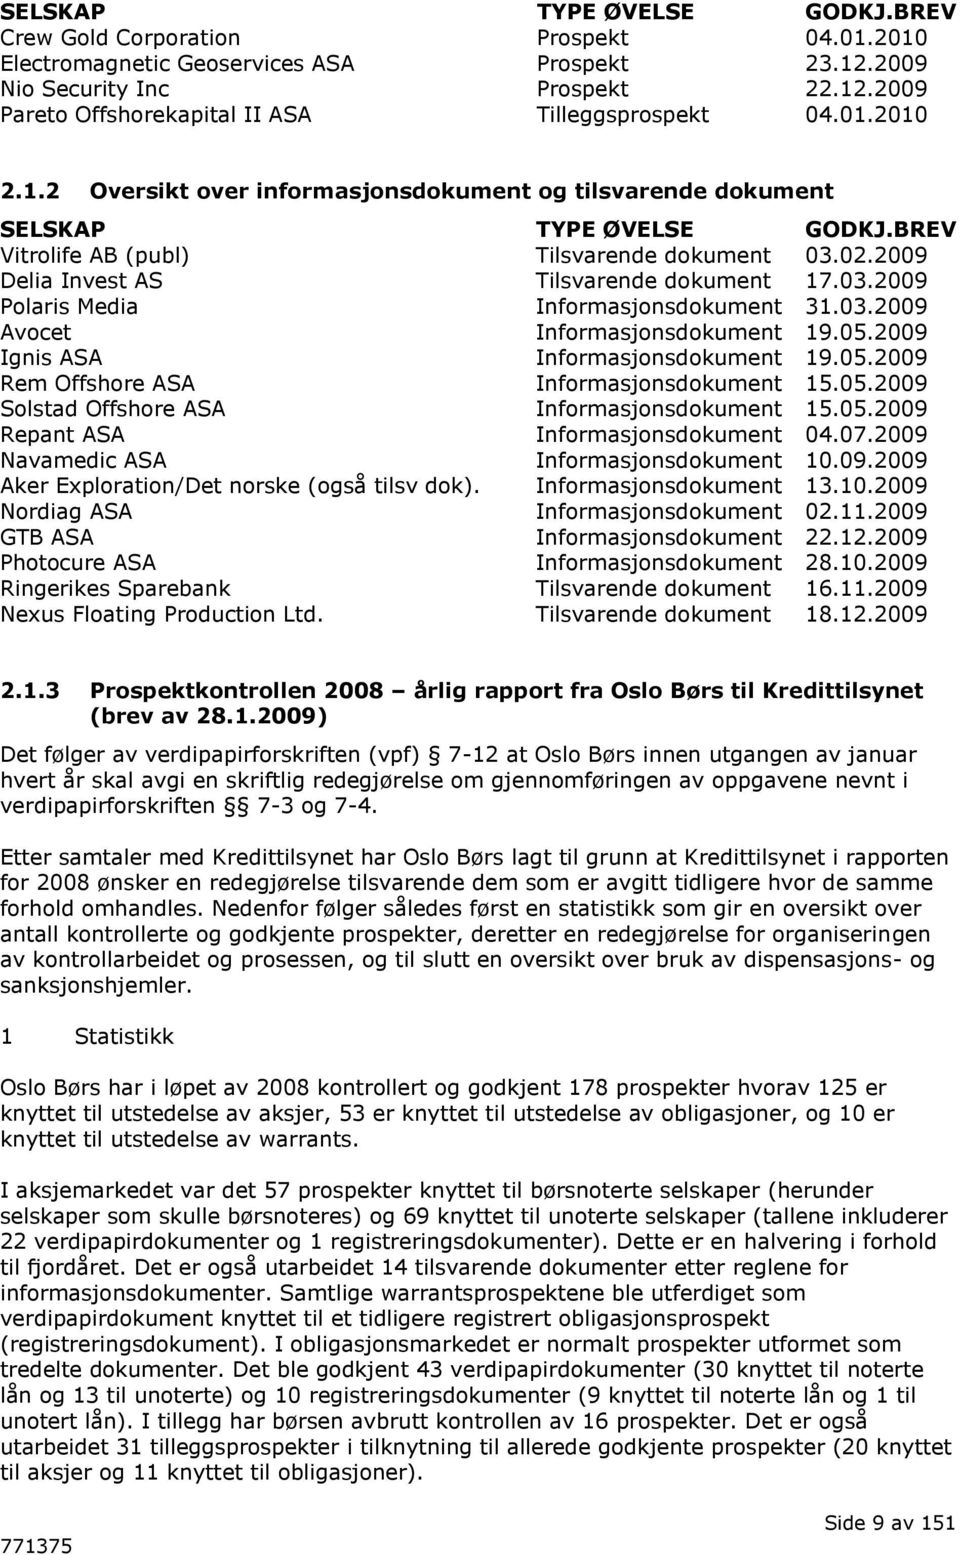 03.2009 Avocet Informasjonsdokument 19.05.2009 Ignis ASA Informasjonsdokument 19.05.2009 Rem Offshore ASA Informasjonsdokument 15.05.2009 Solstad Offshore ASA Informasjonsdokument 15.05.2009 Repant ASA Informasjonsdokument 04.